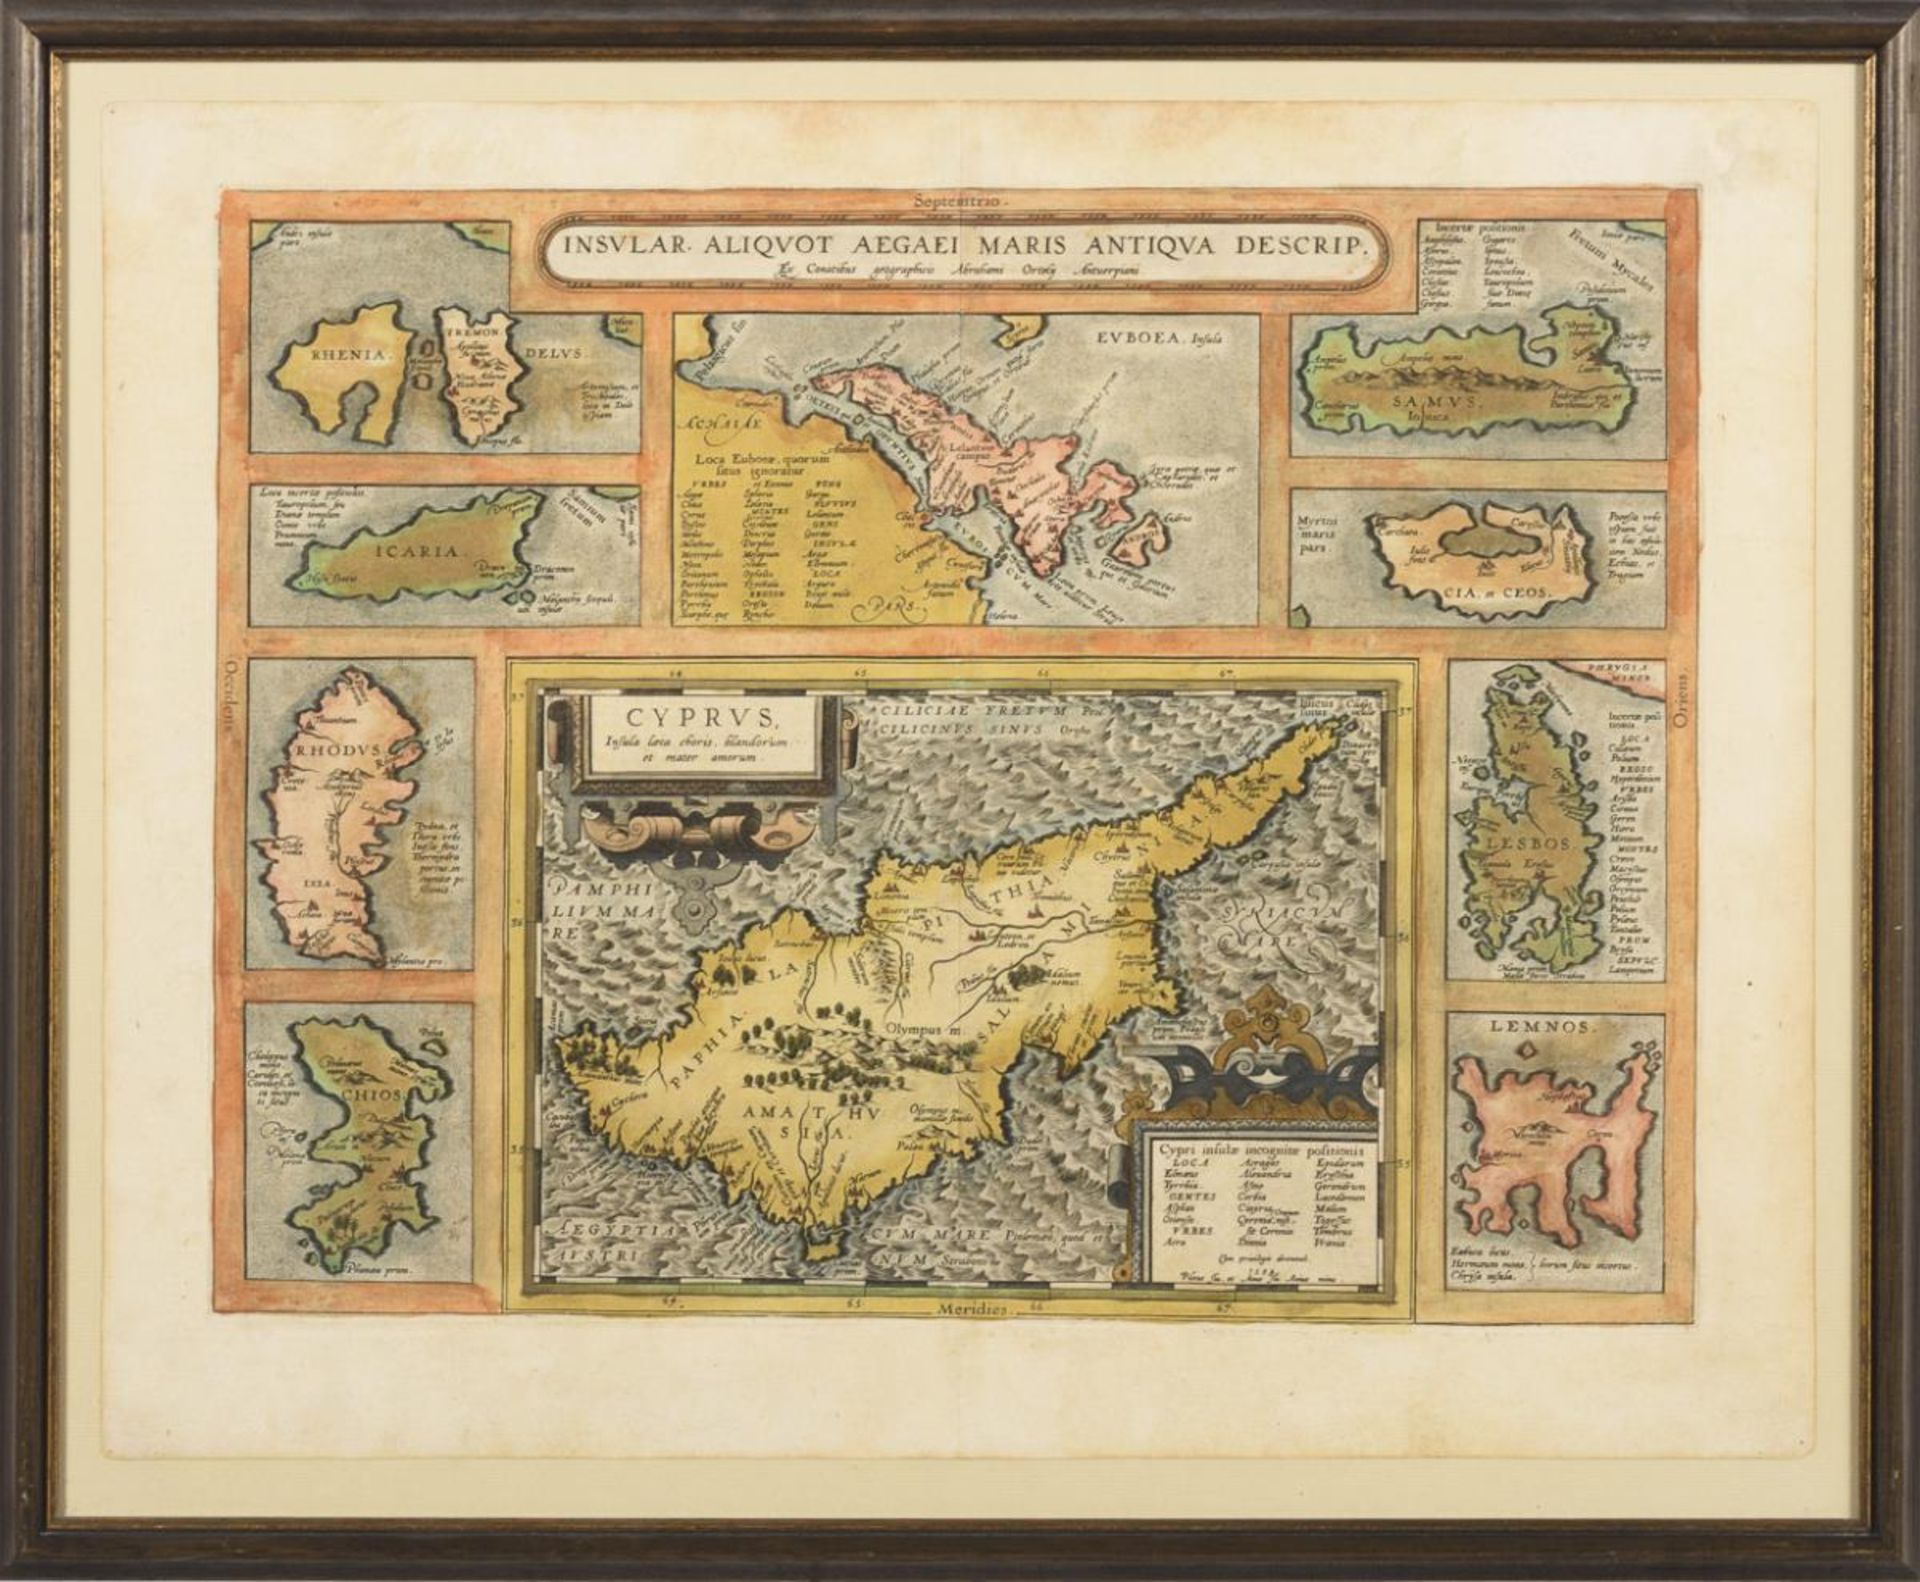 Landkarte einiger Ägäischer Inseln